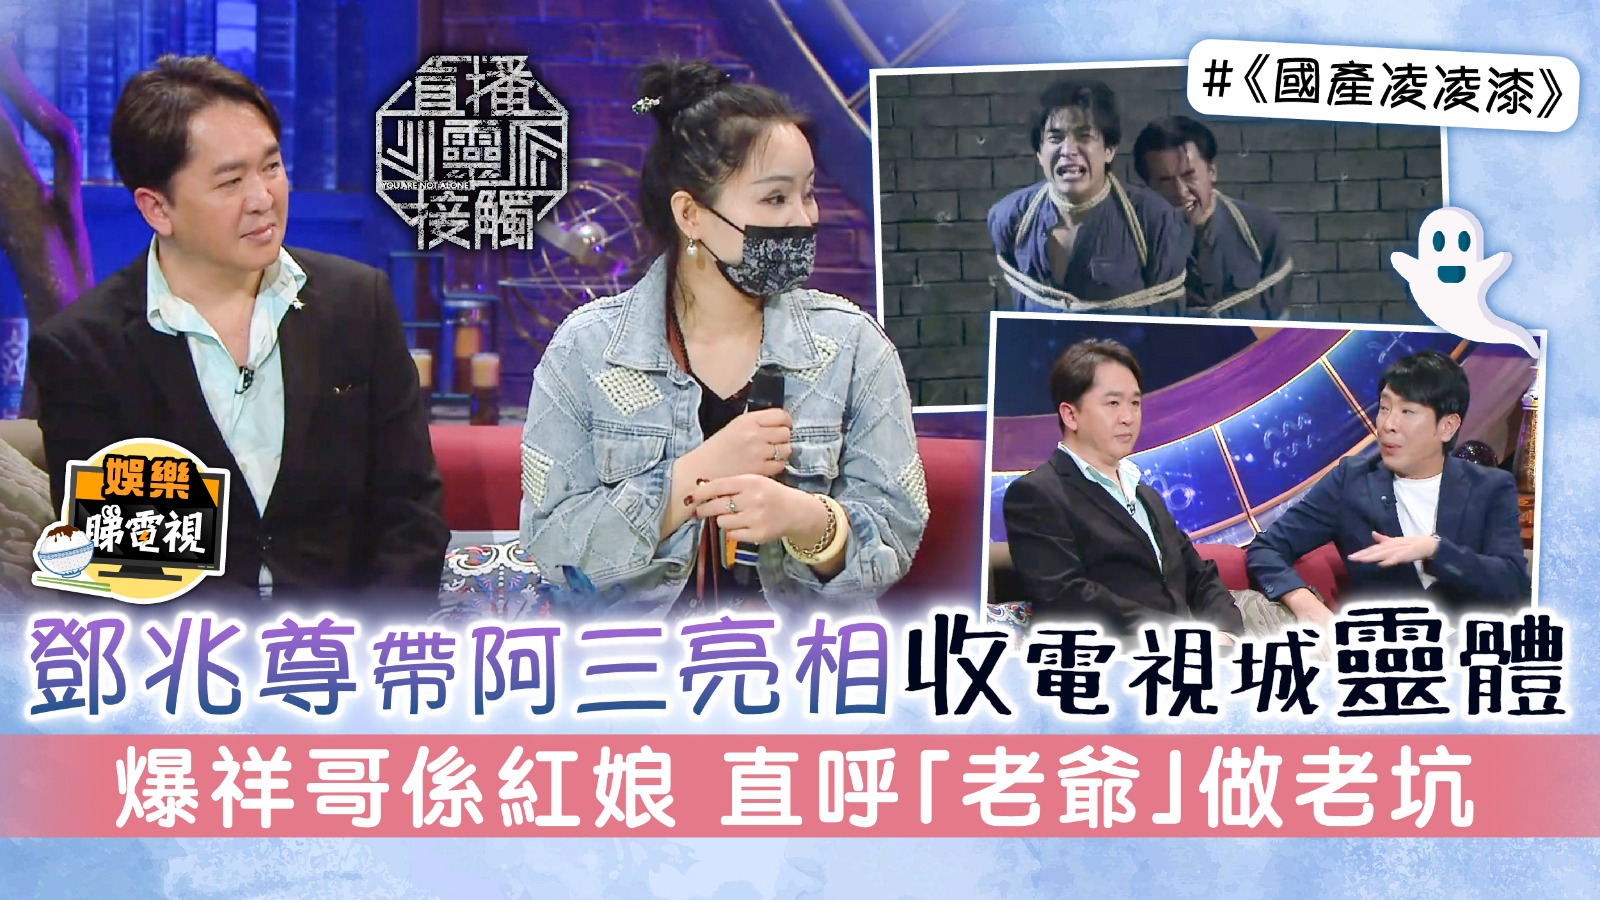 Diffusion en direct d’un contact spirituel 丨 Deng Zhaozun et Ah San sont apparus sur la chaîne de télévision pour exposer le corps spirituel et l’entremetteur de Xiang Ge appelé « Maître » et ont fabriqué un piège |